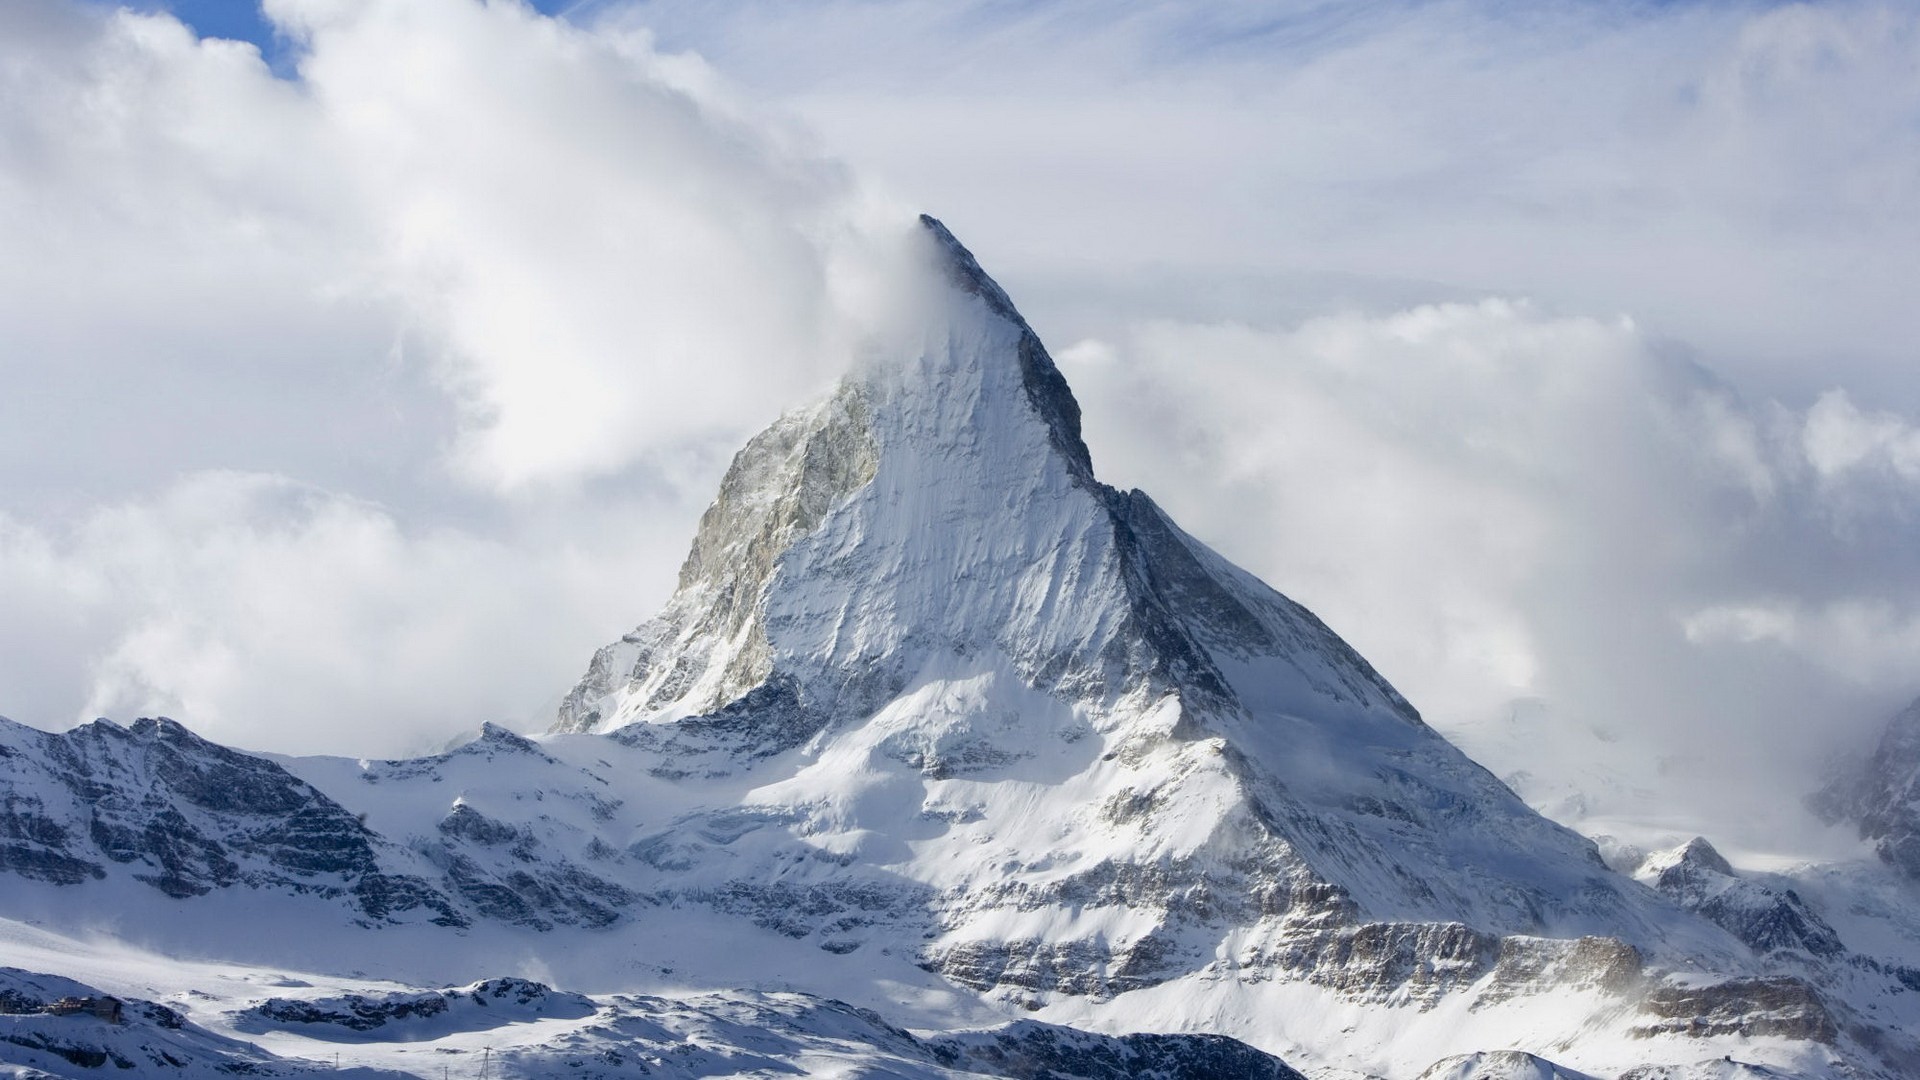 1920x1080 Mountains landscapes snow Matterhorn wallpaper |  | 203230 |  WallpaperUP